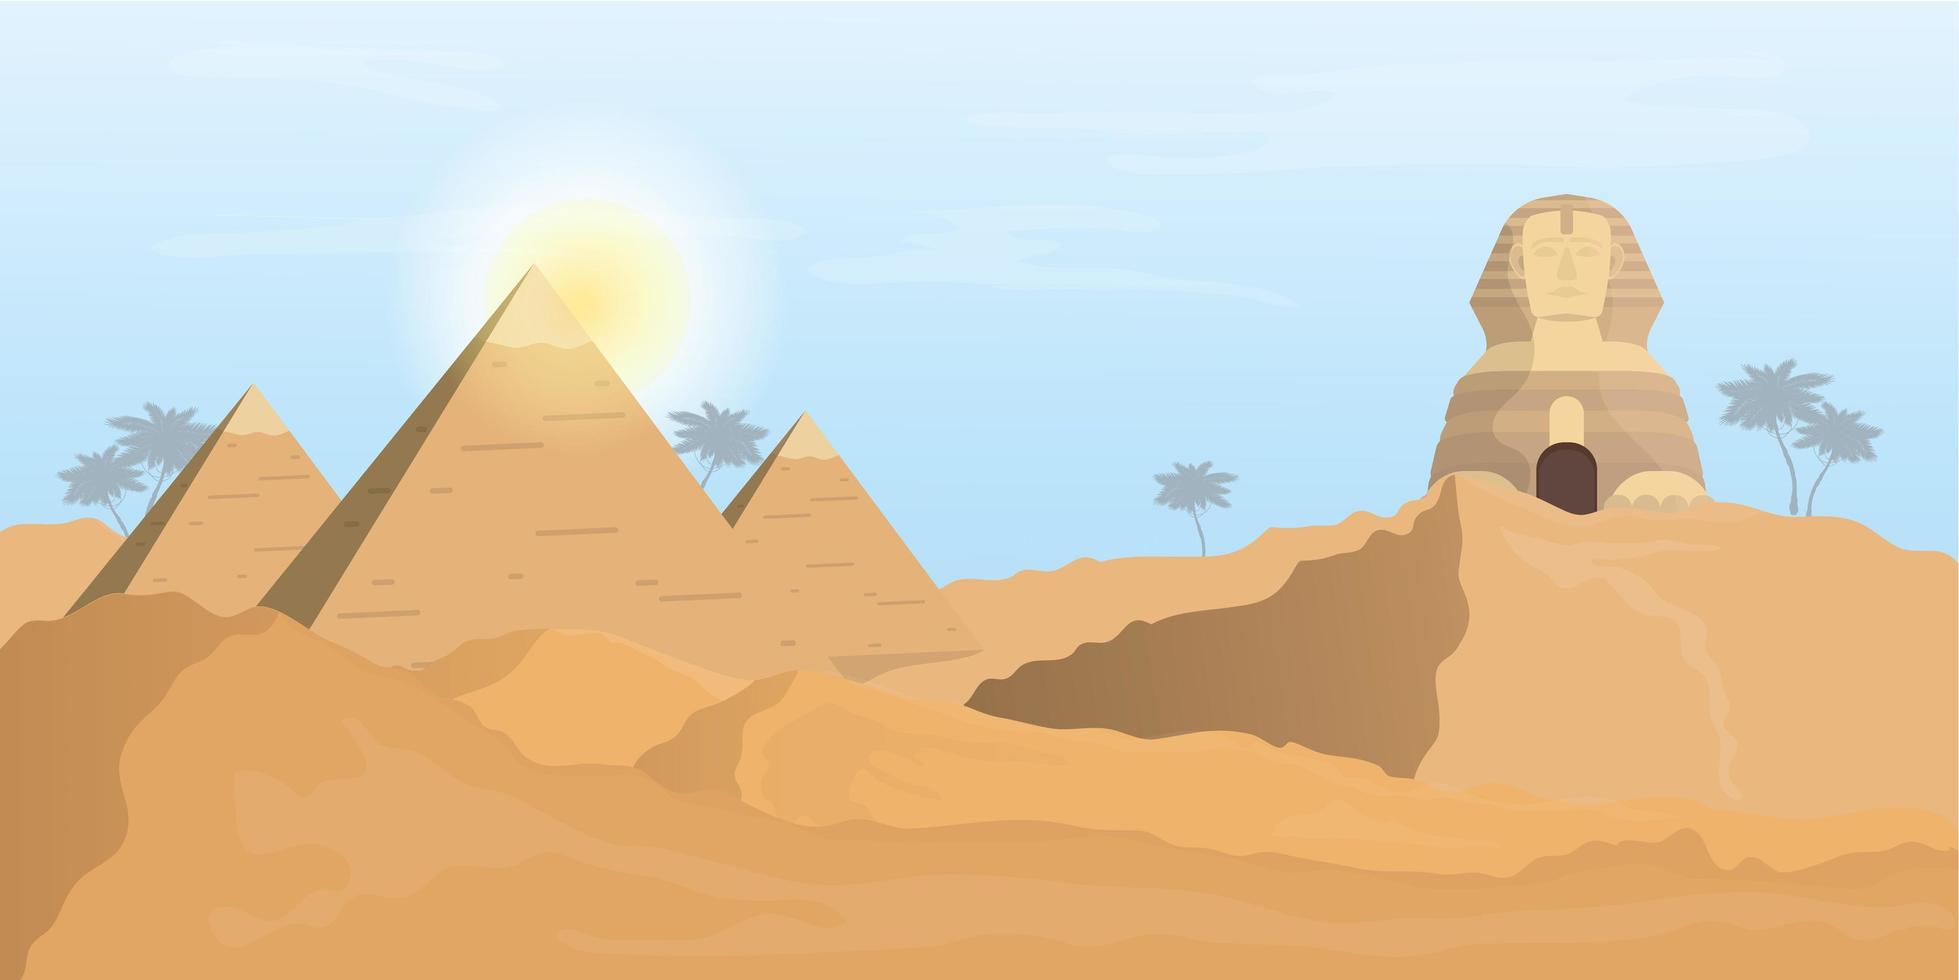 esfinge egipcia y pirámides. Desierto. un hombre conduce camellos por el desierto. vector